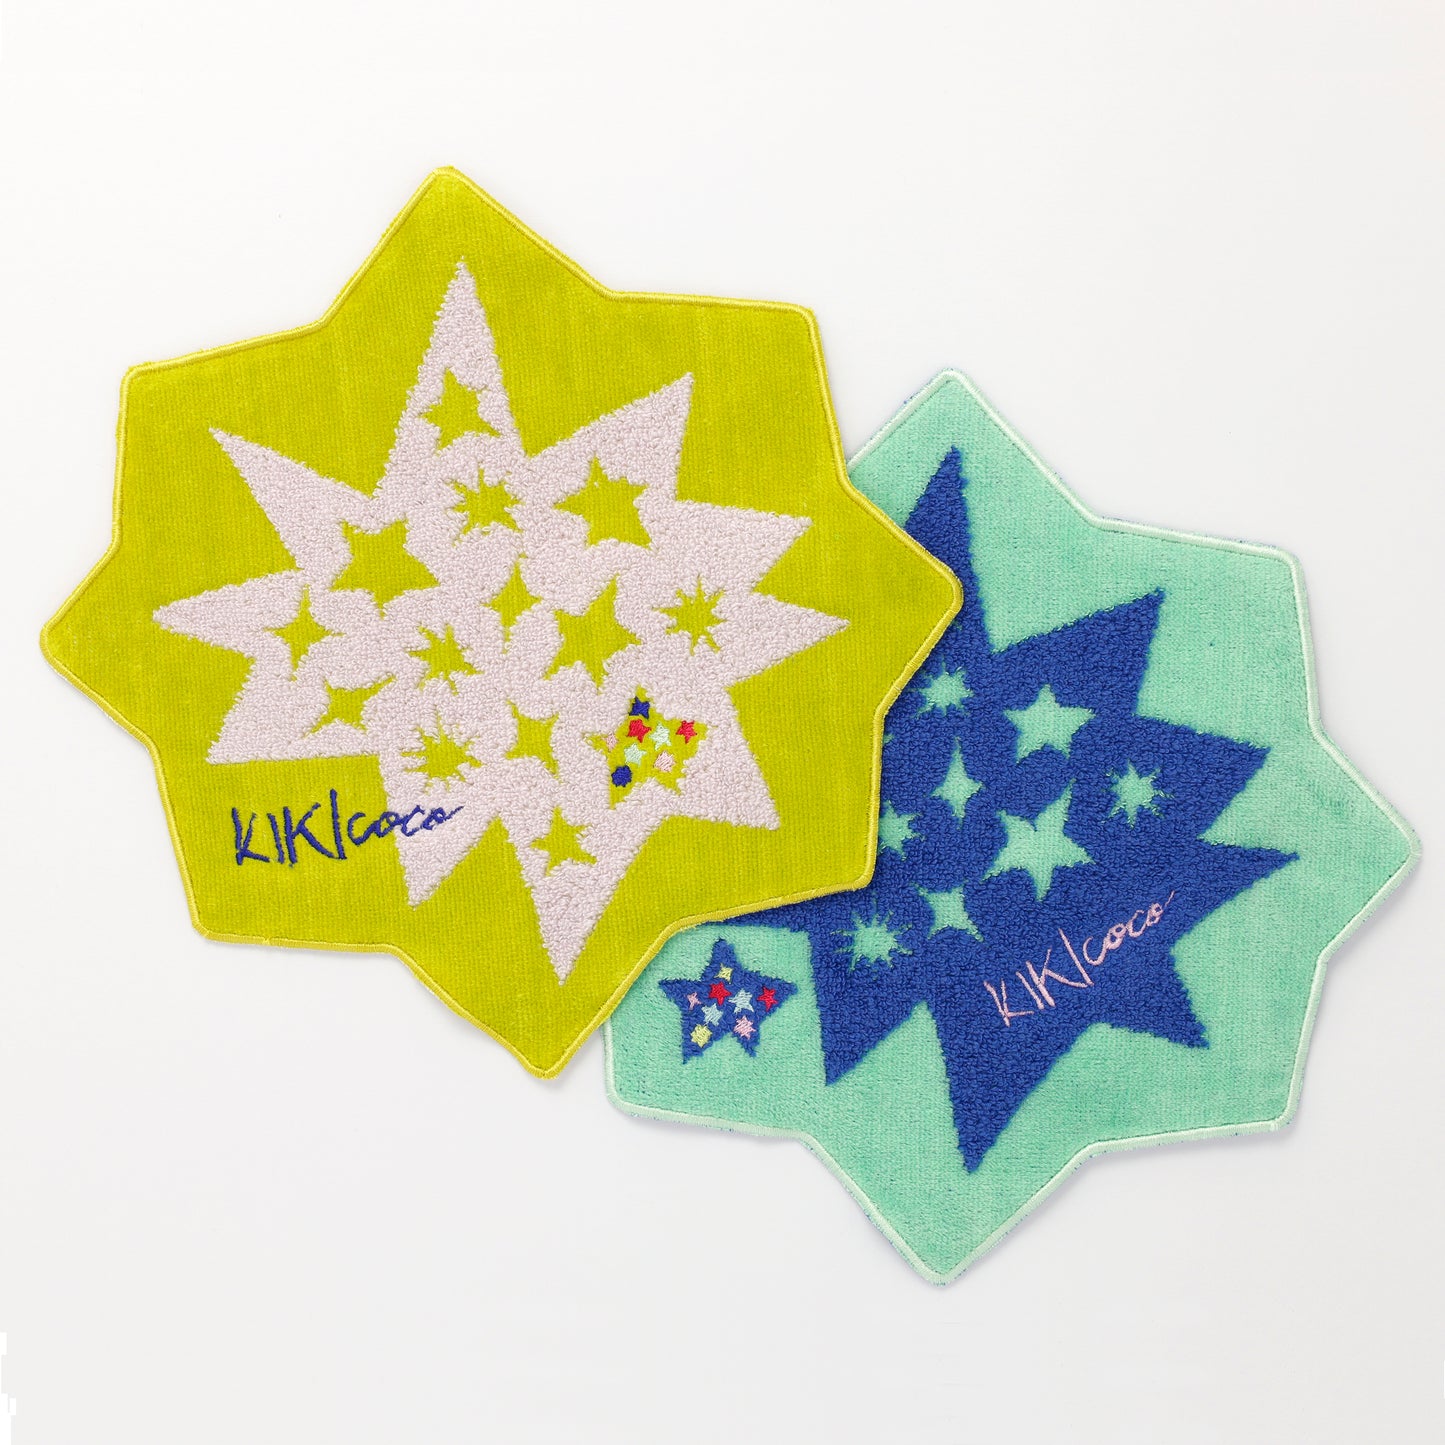 星形ハンカチ／Handkerchief star